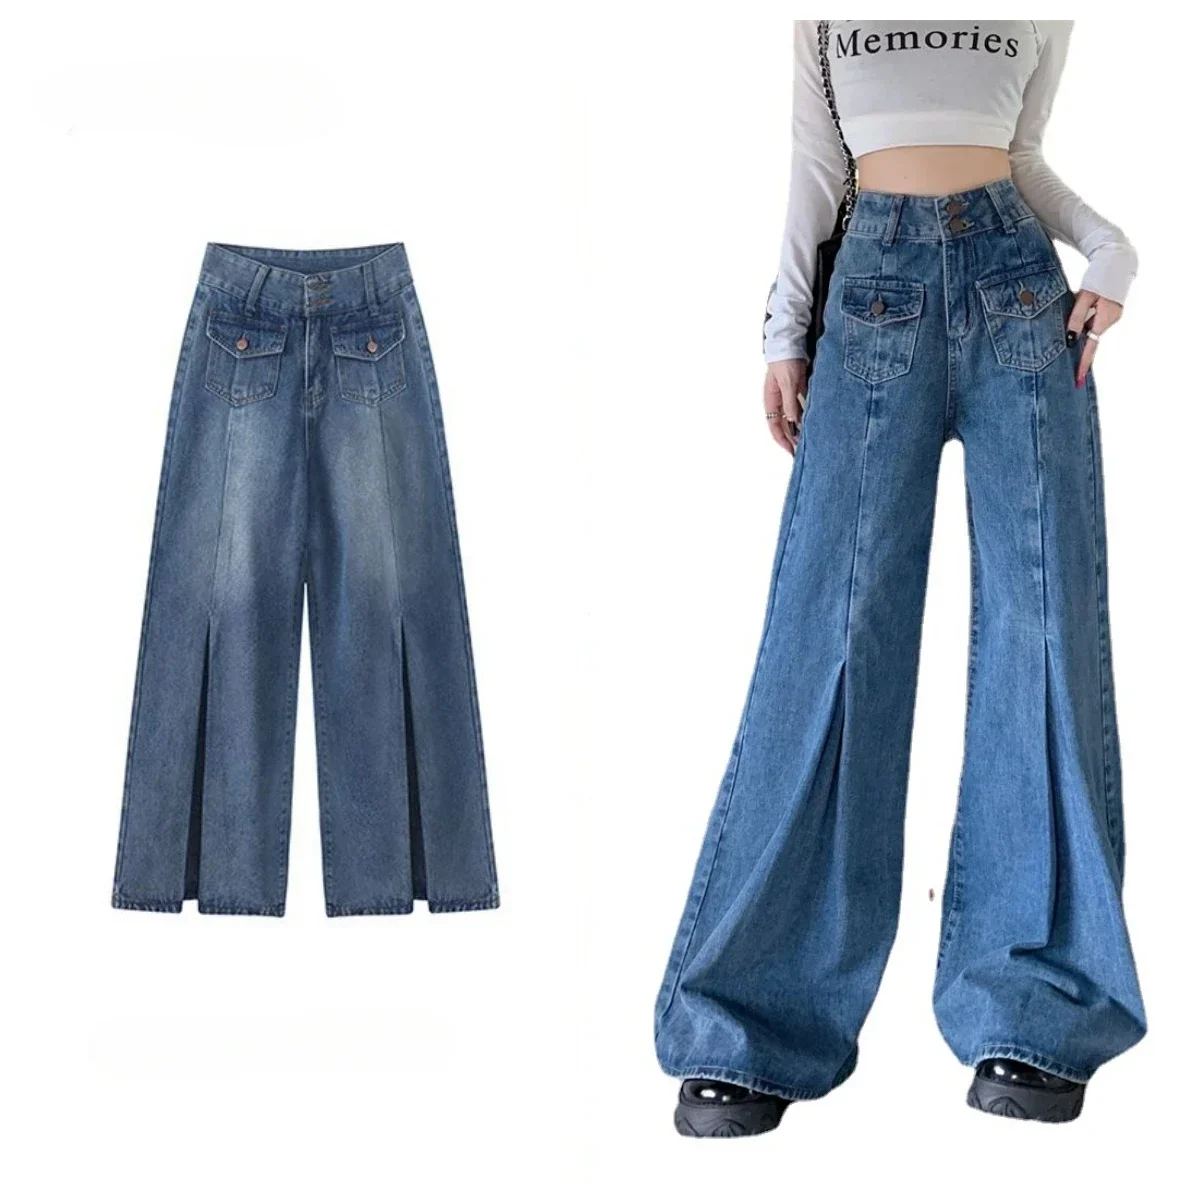 

Женские джинсы с плиссированными расклешенными штанинами, небольшие брюки-ботинки из денима с колокольчиком, джинсовые брюки y2k с высокой талией, стандартные широкие синие джинсы, одежда